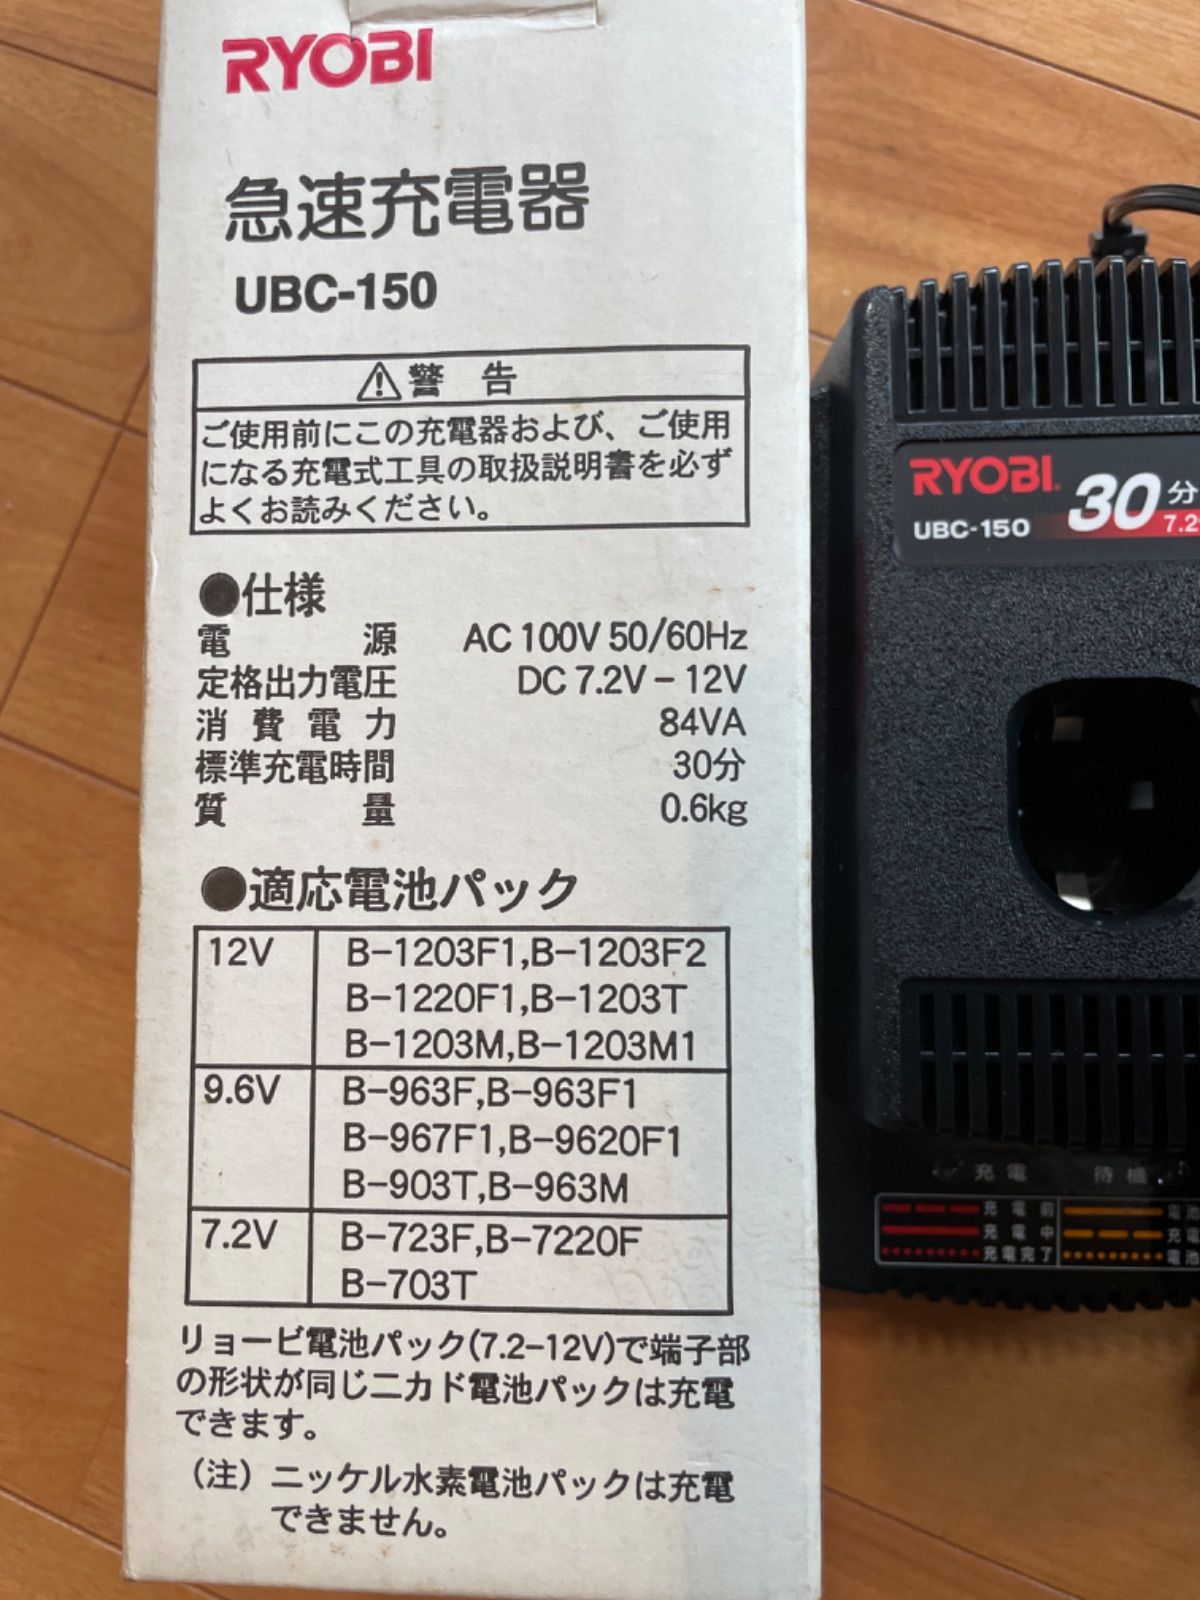 RYOBI 急速充電器 UBC-150 - メルカリ